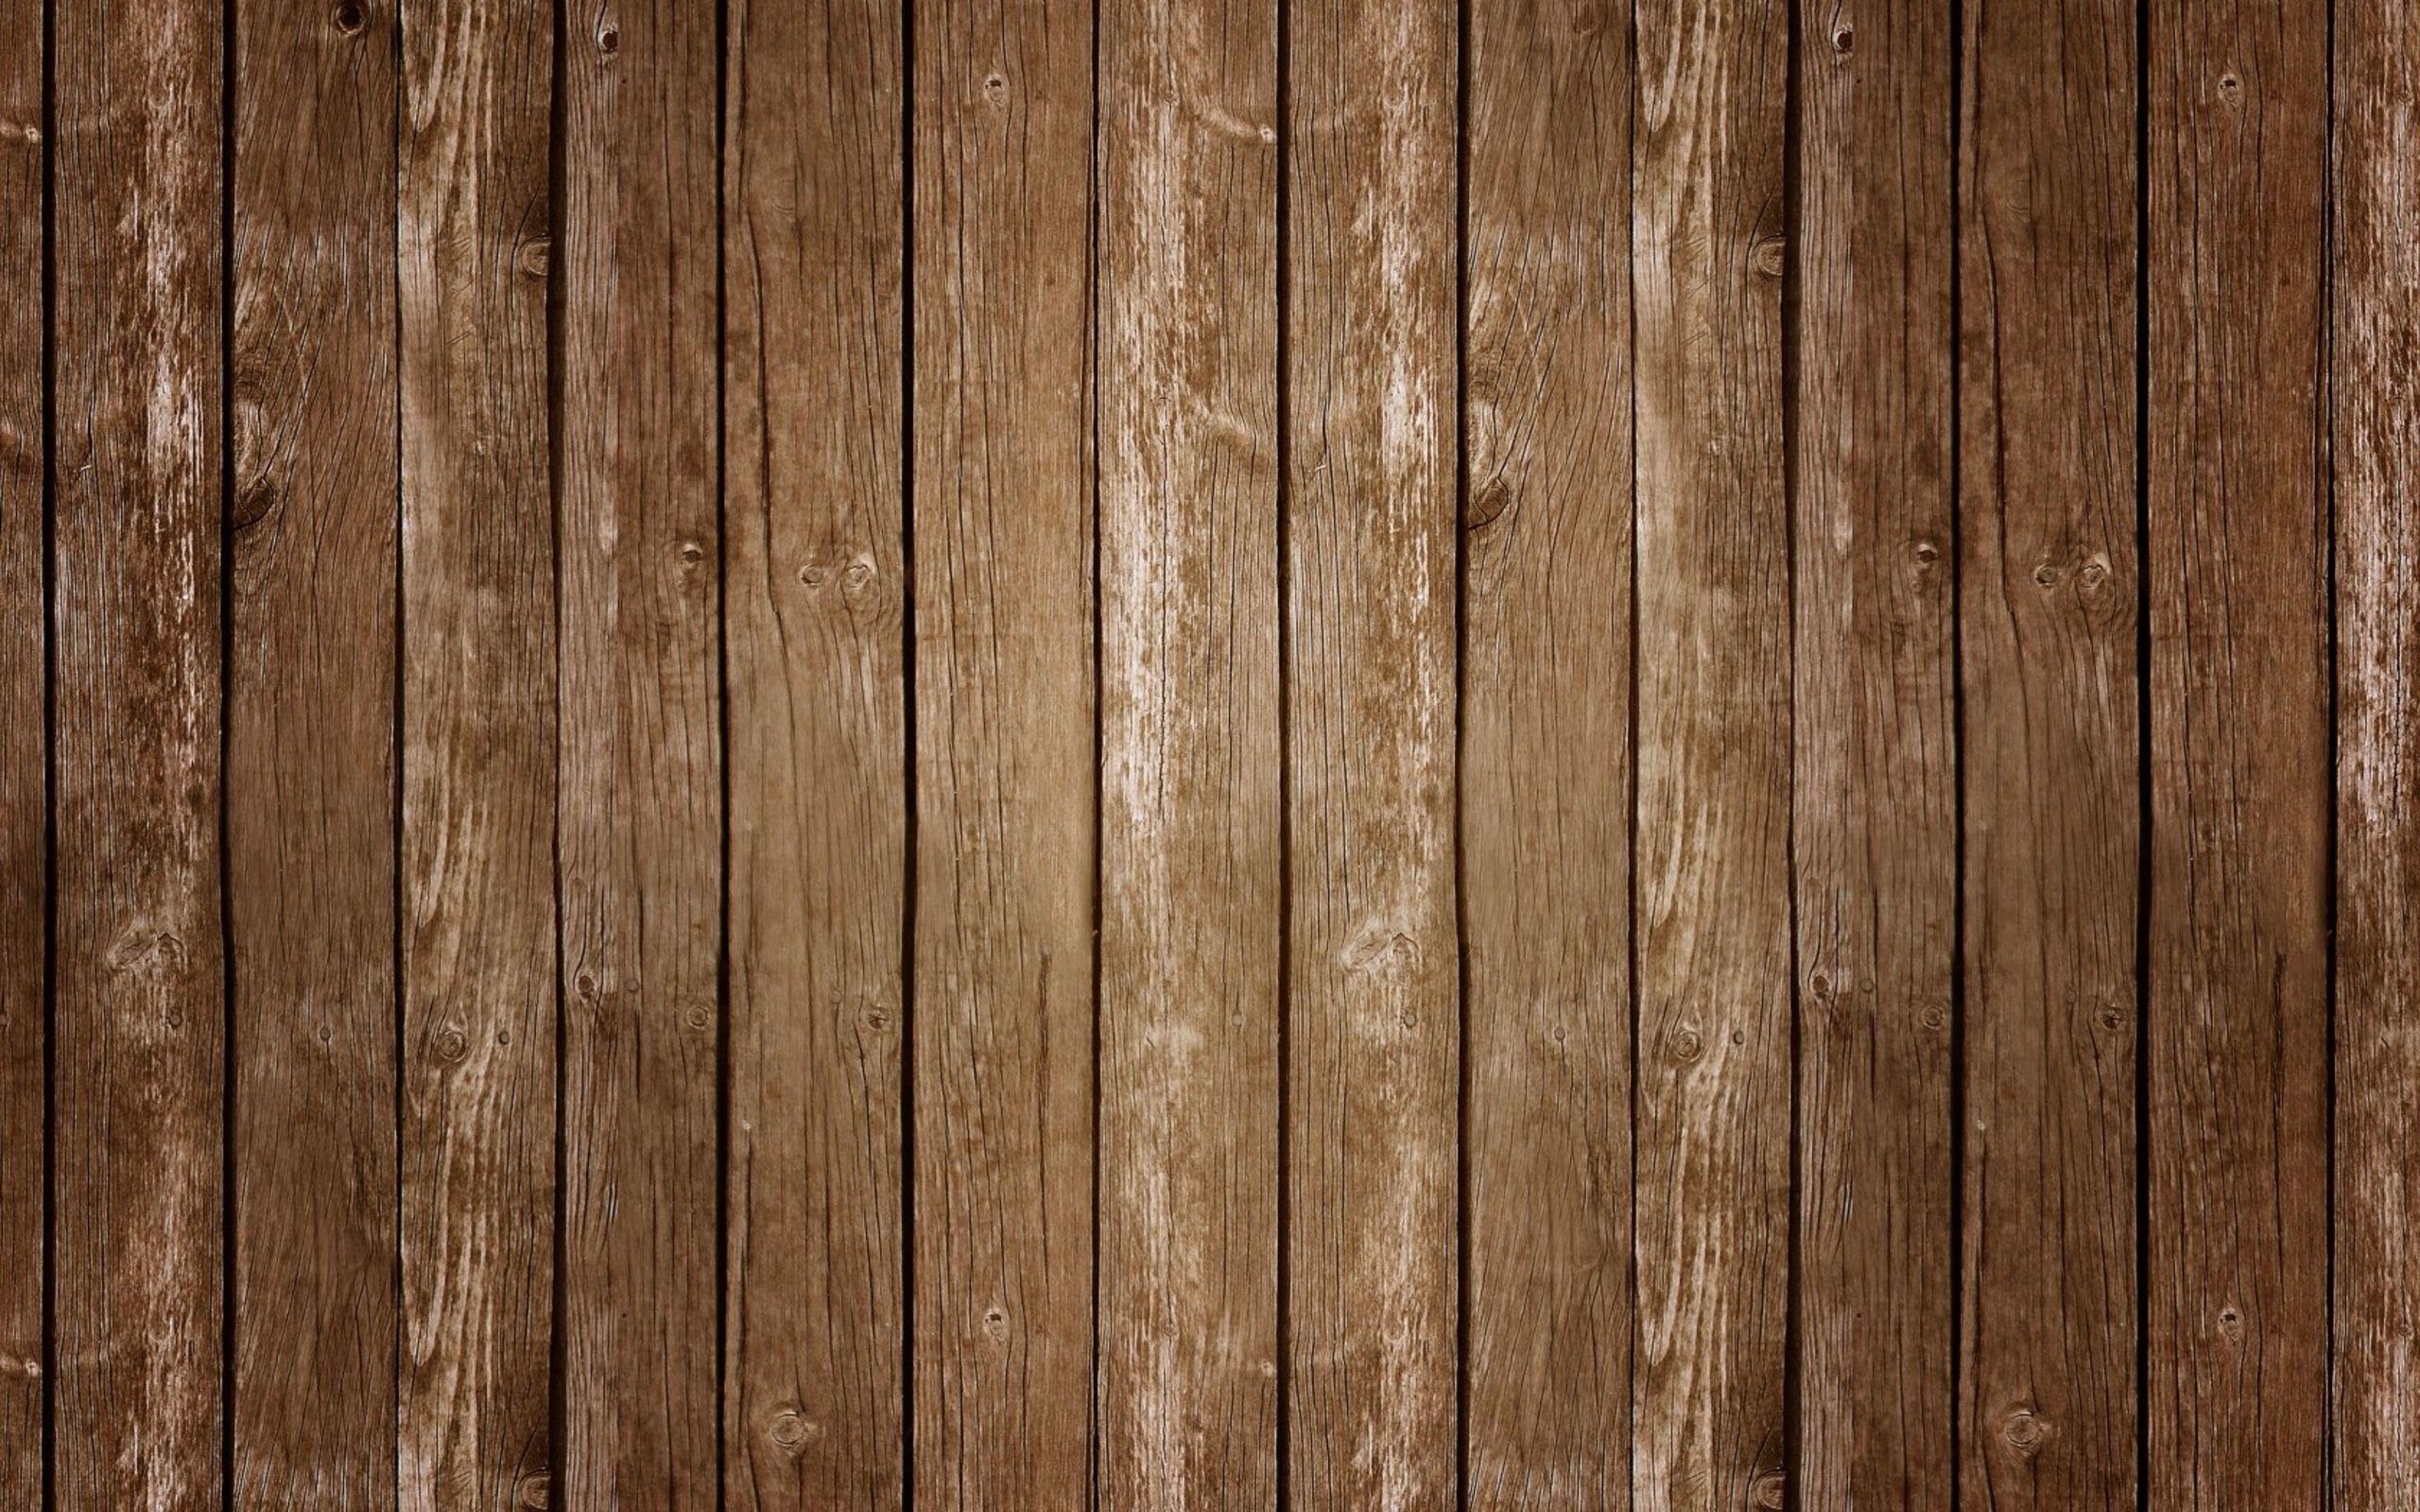 Những hình nền gỗ đẹp với các gam màu ấm áp và đa dạng sẽ là sự lựa chọn hoàn hảo để thêm phần tươi sáng vào màn hình thiết bị của bạn. Hãy xem những mẫu hình nền gỗ đẹp nhất qua hình ảnh liên quan ngay!